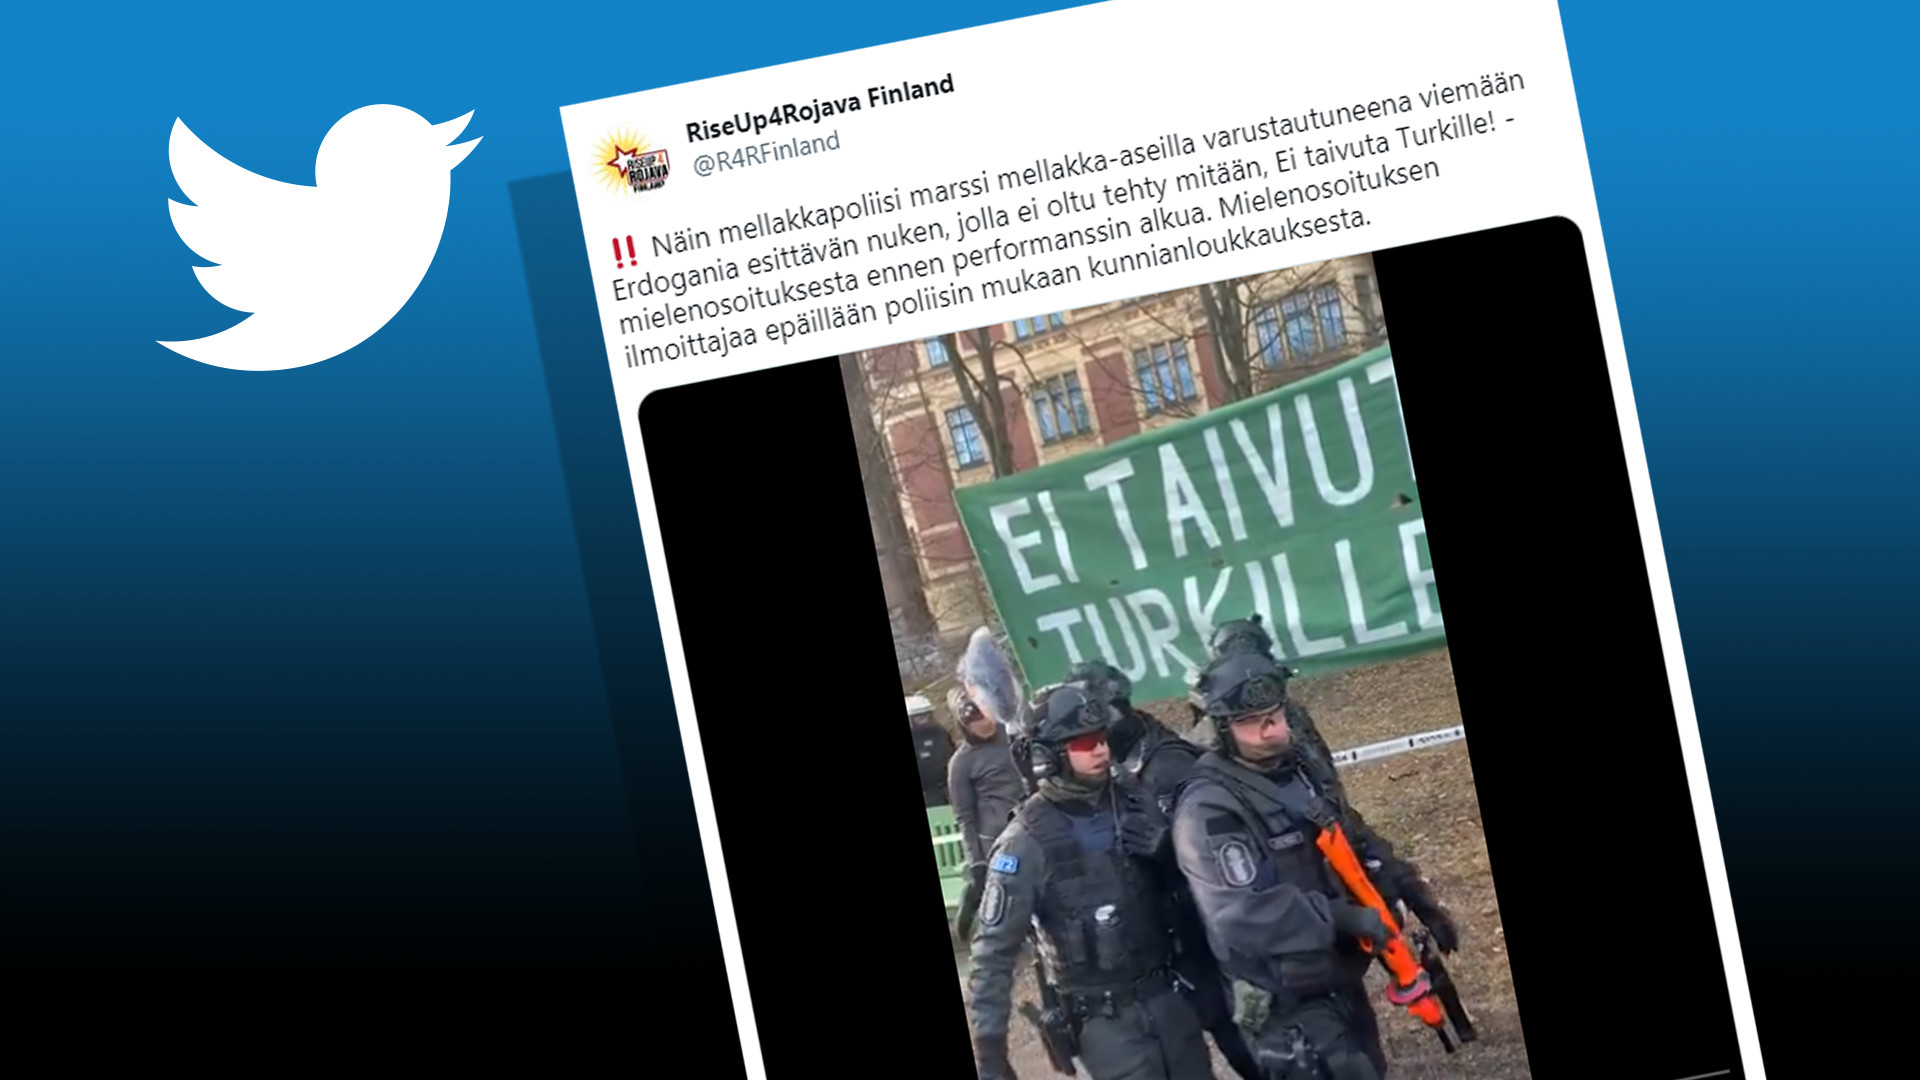 Die Polizei entfernte Erdogans Figur von der Helsinki-Demonstration